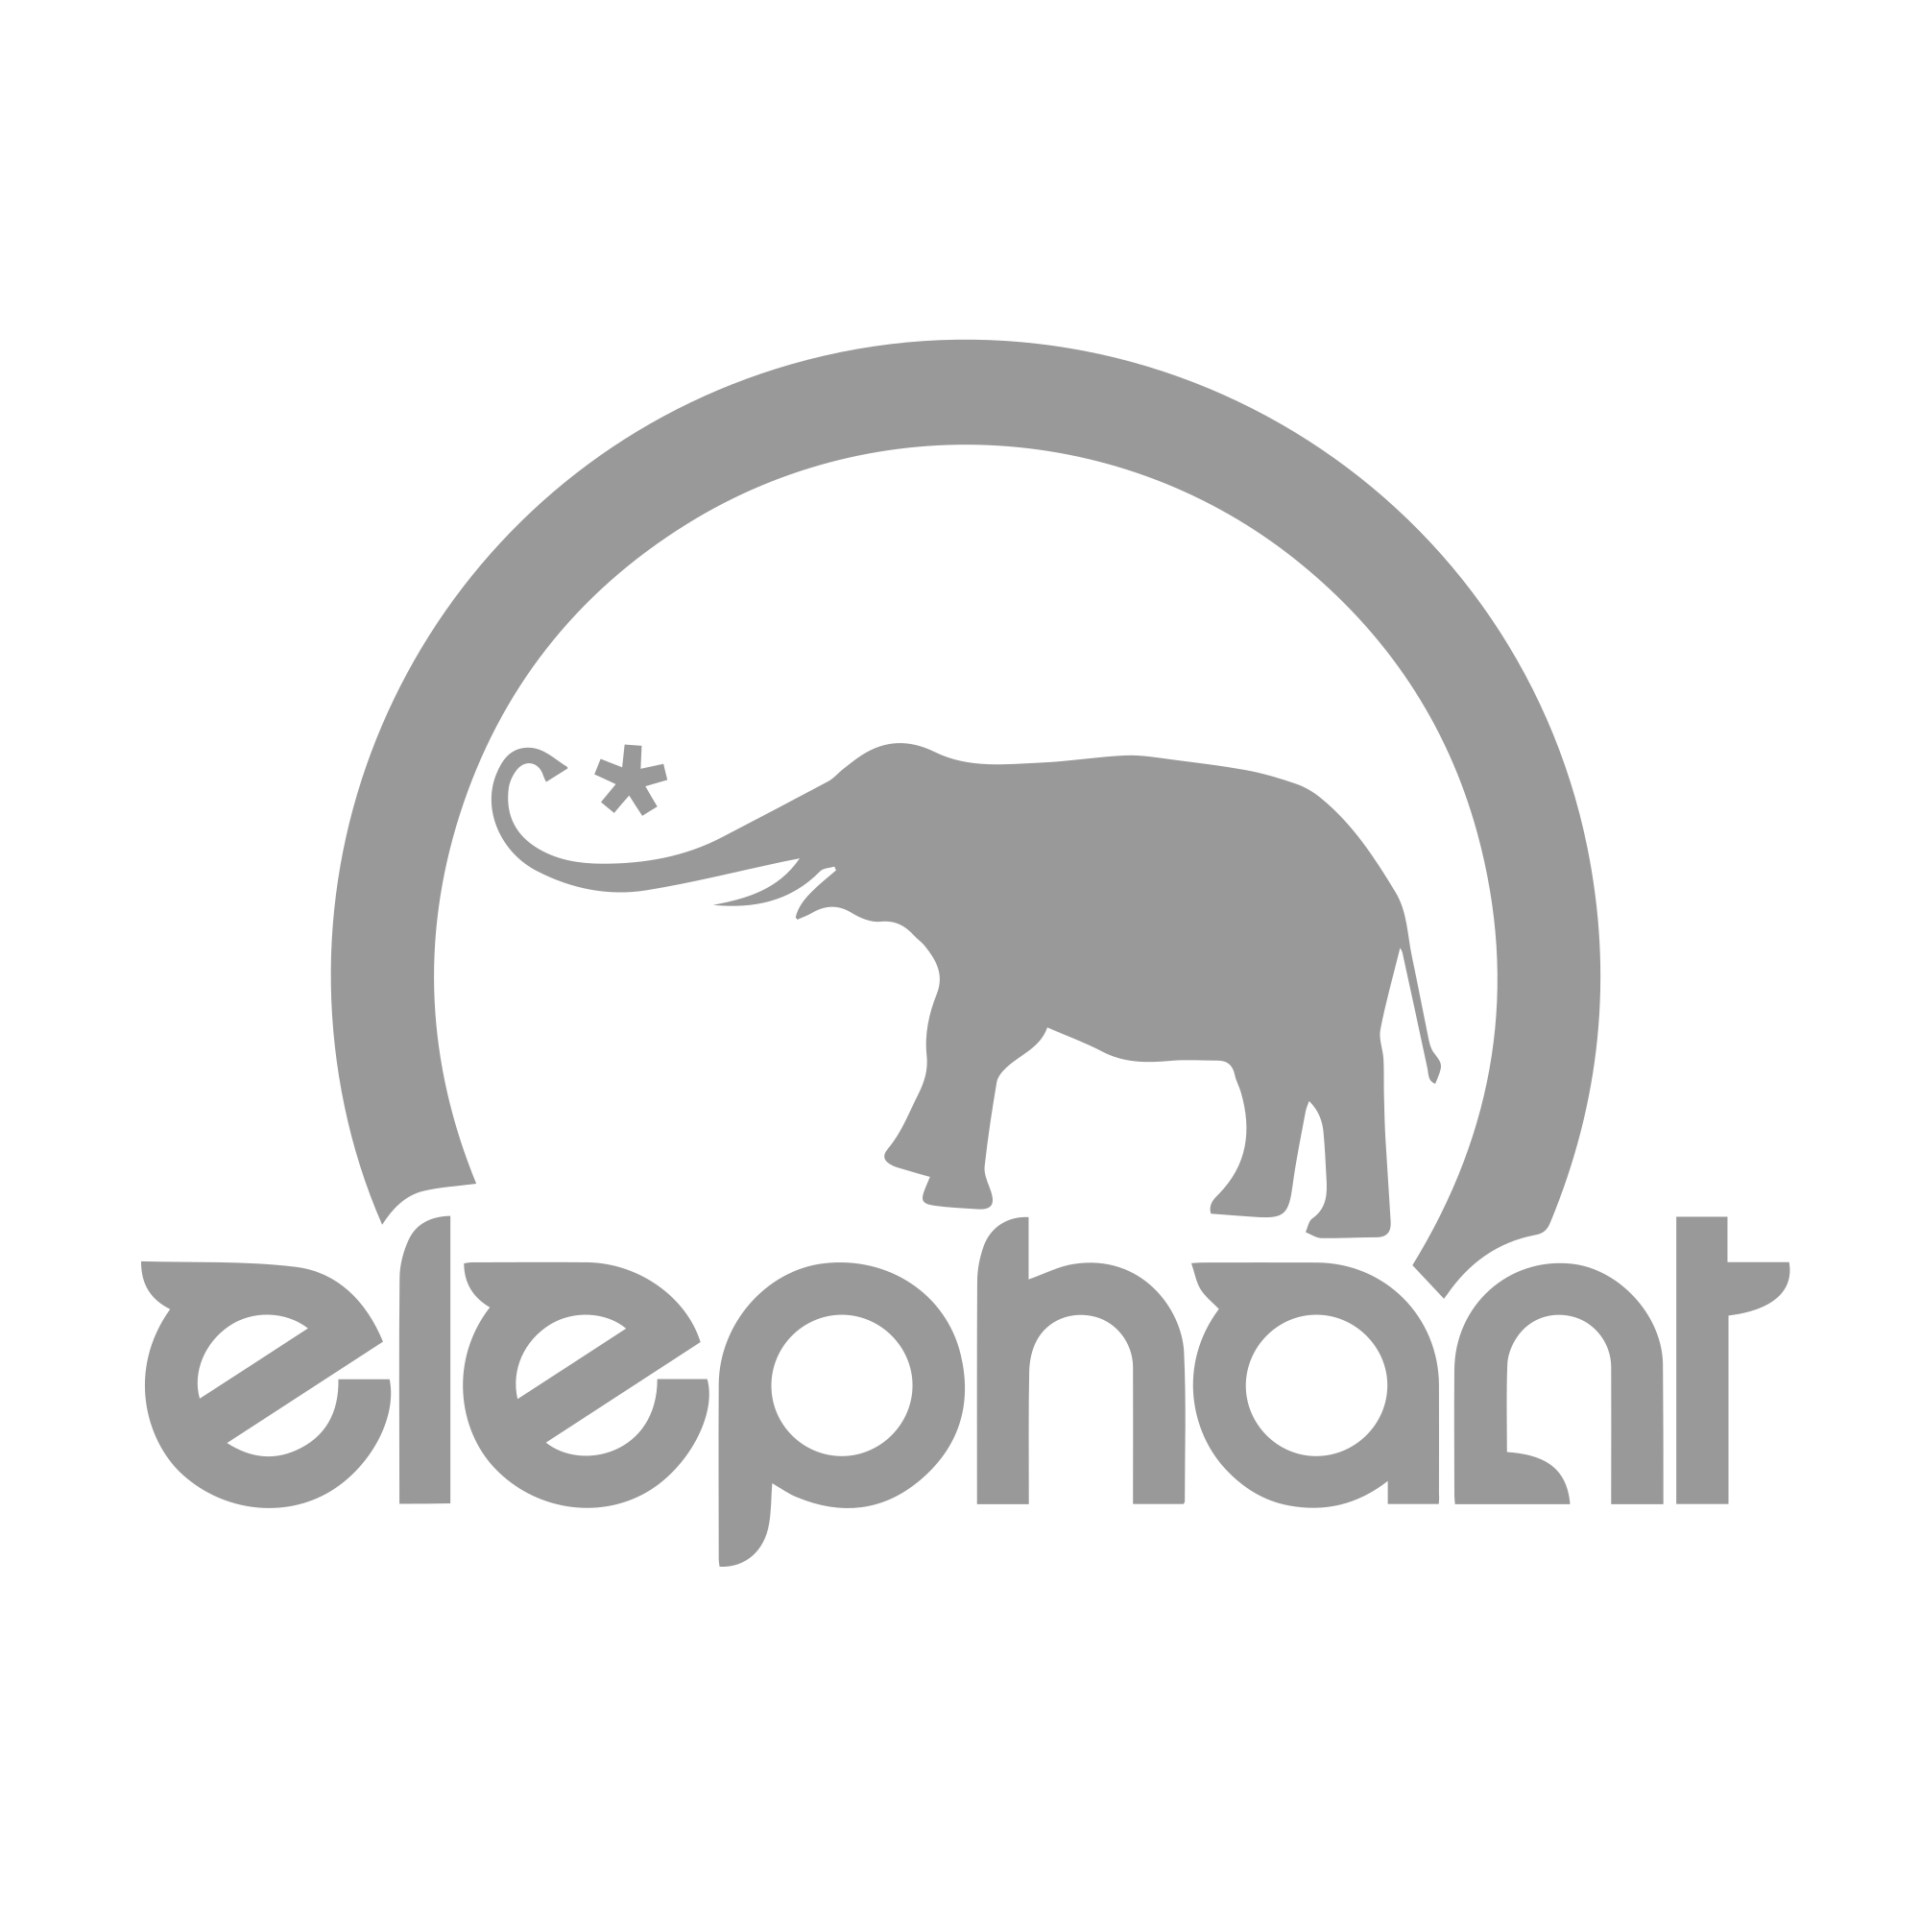 elephant-journal-logo-image-logo20grey2000